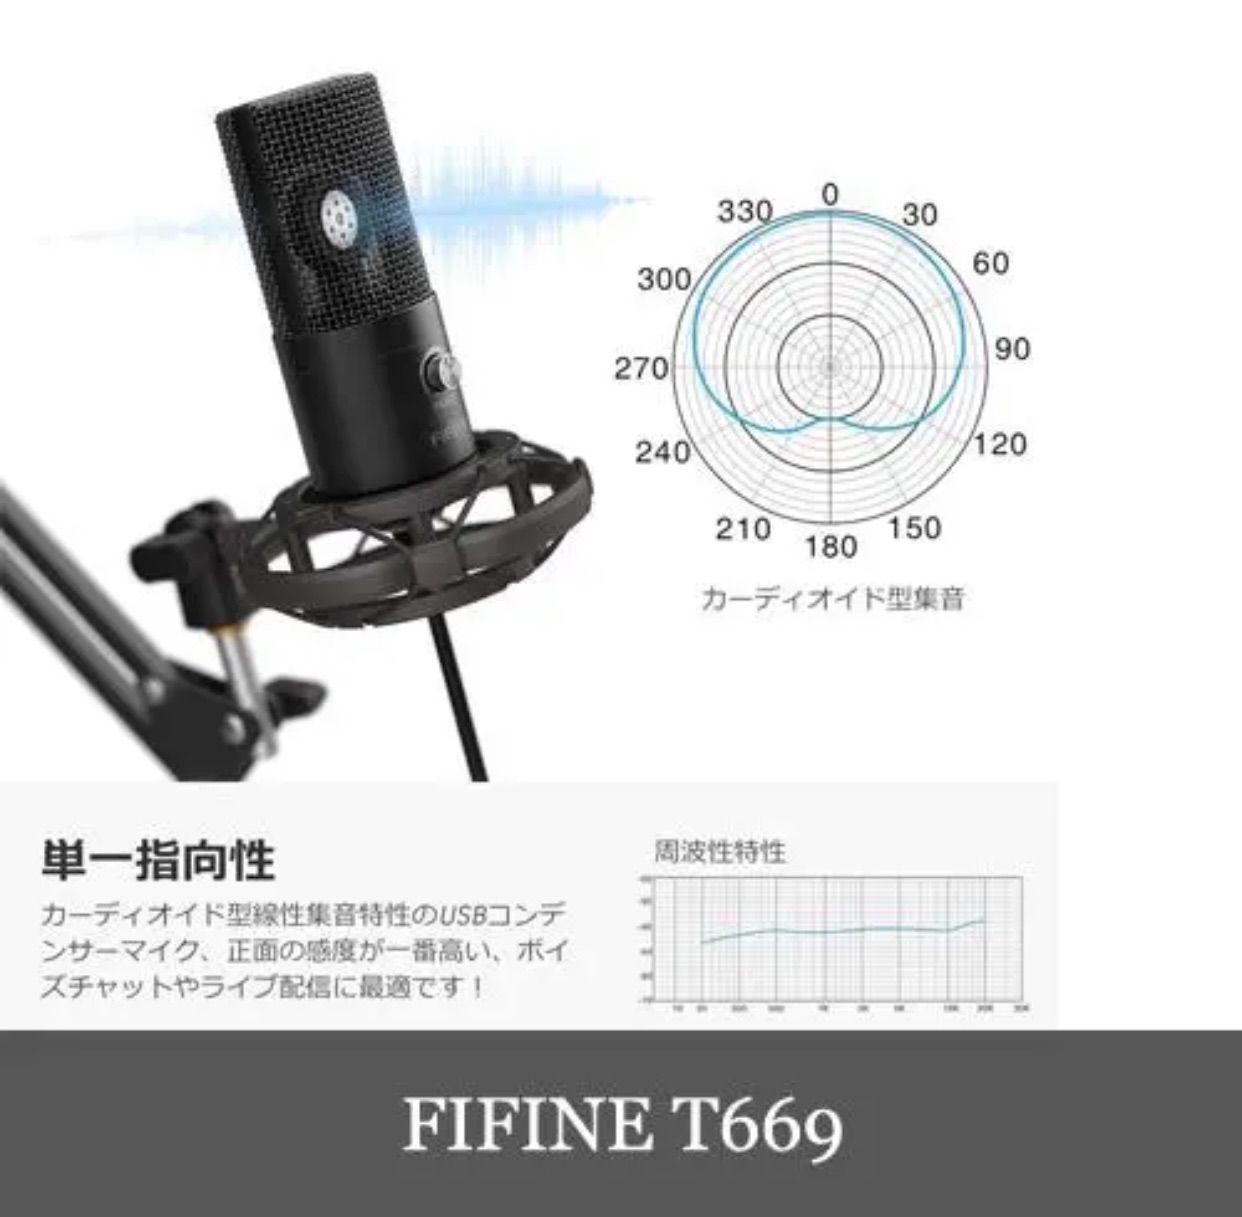 新品FIFINE T669 高音質 USBマイク コンデンサーマイク 日本語版